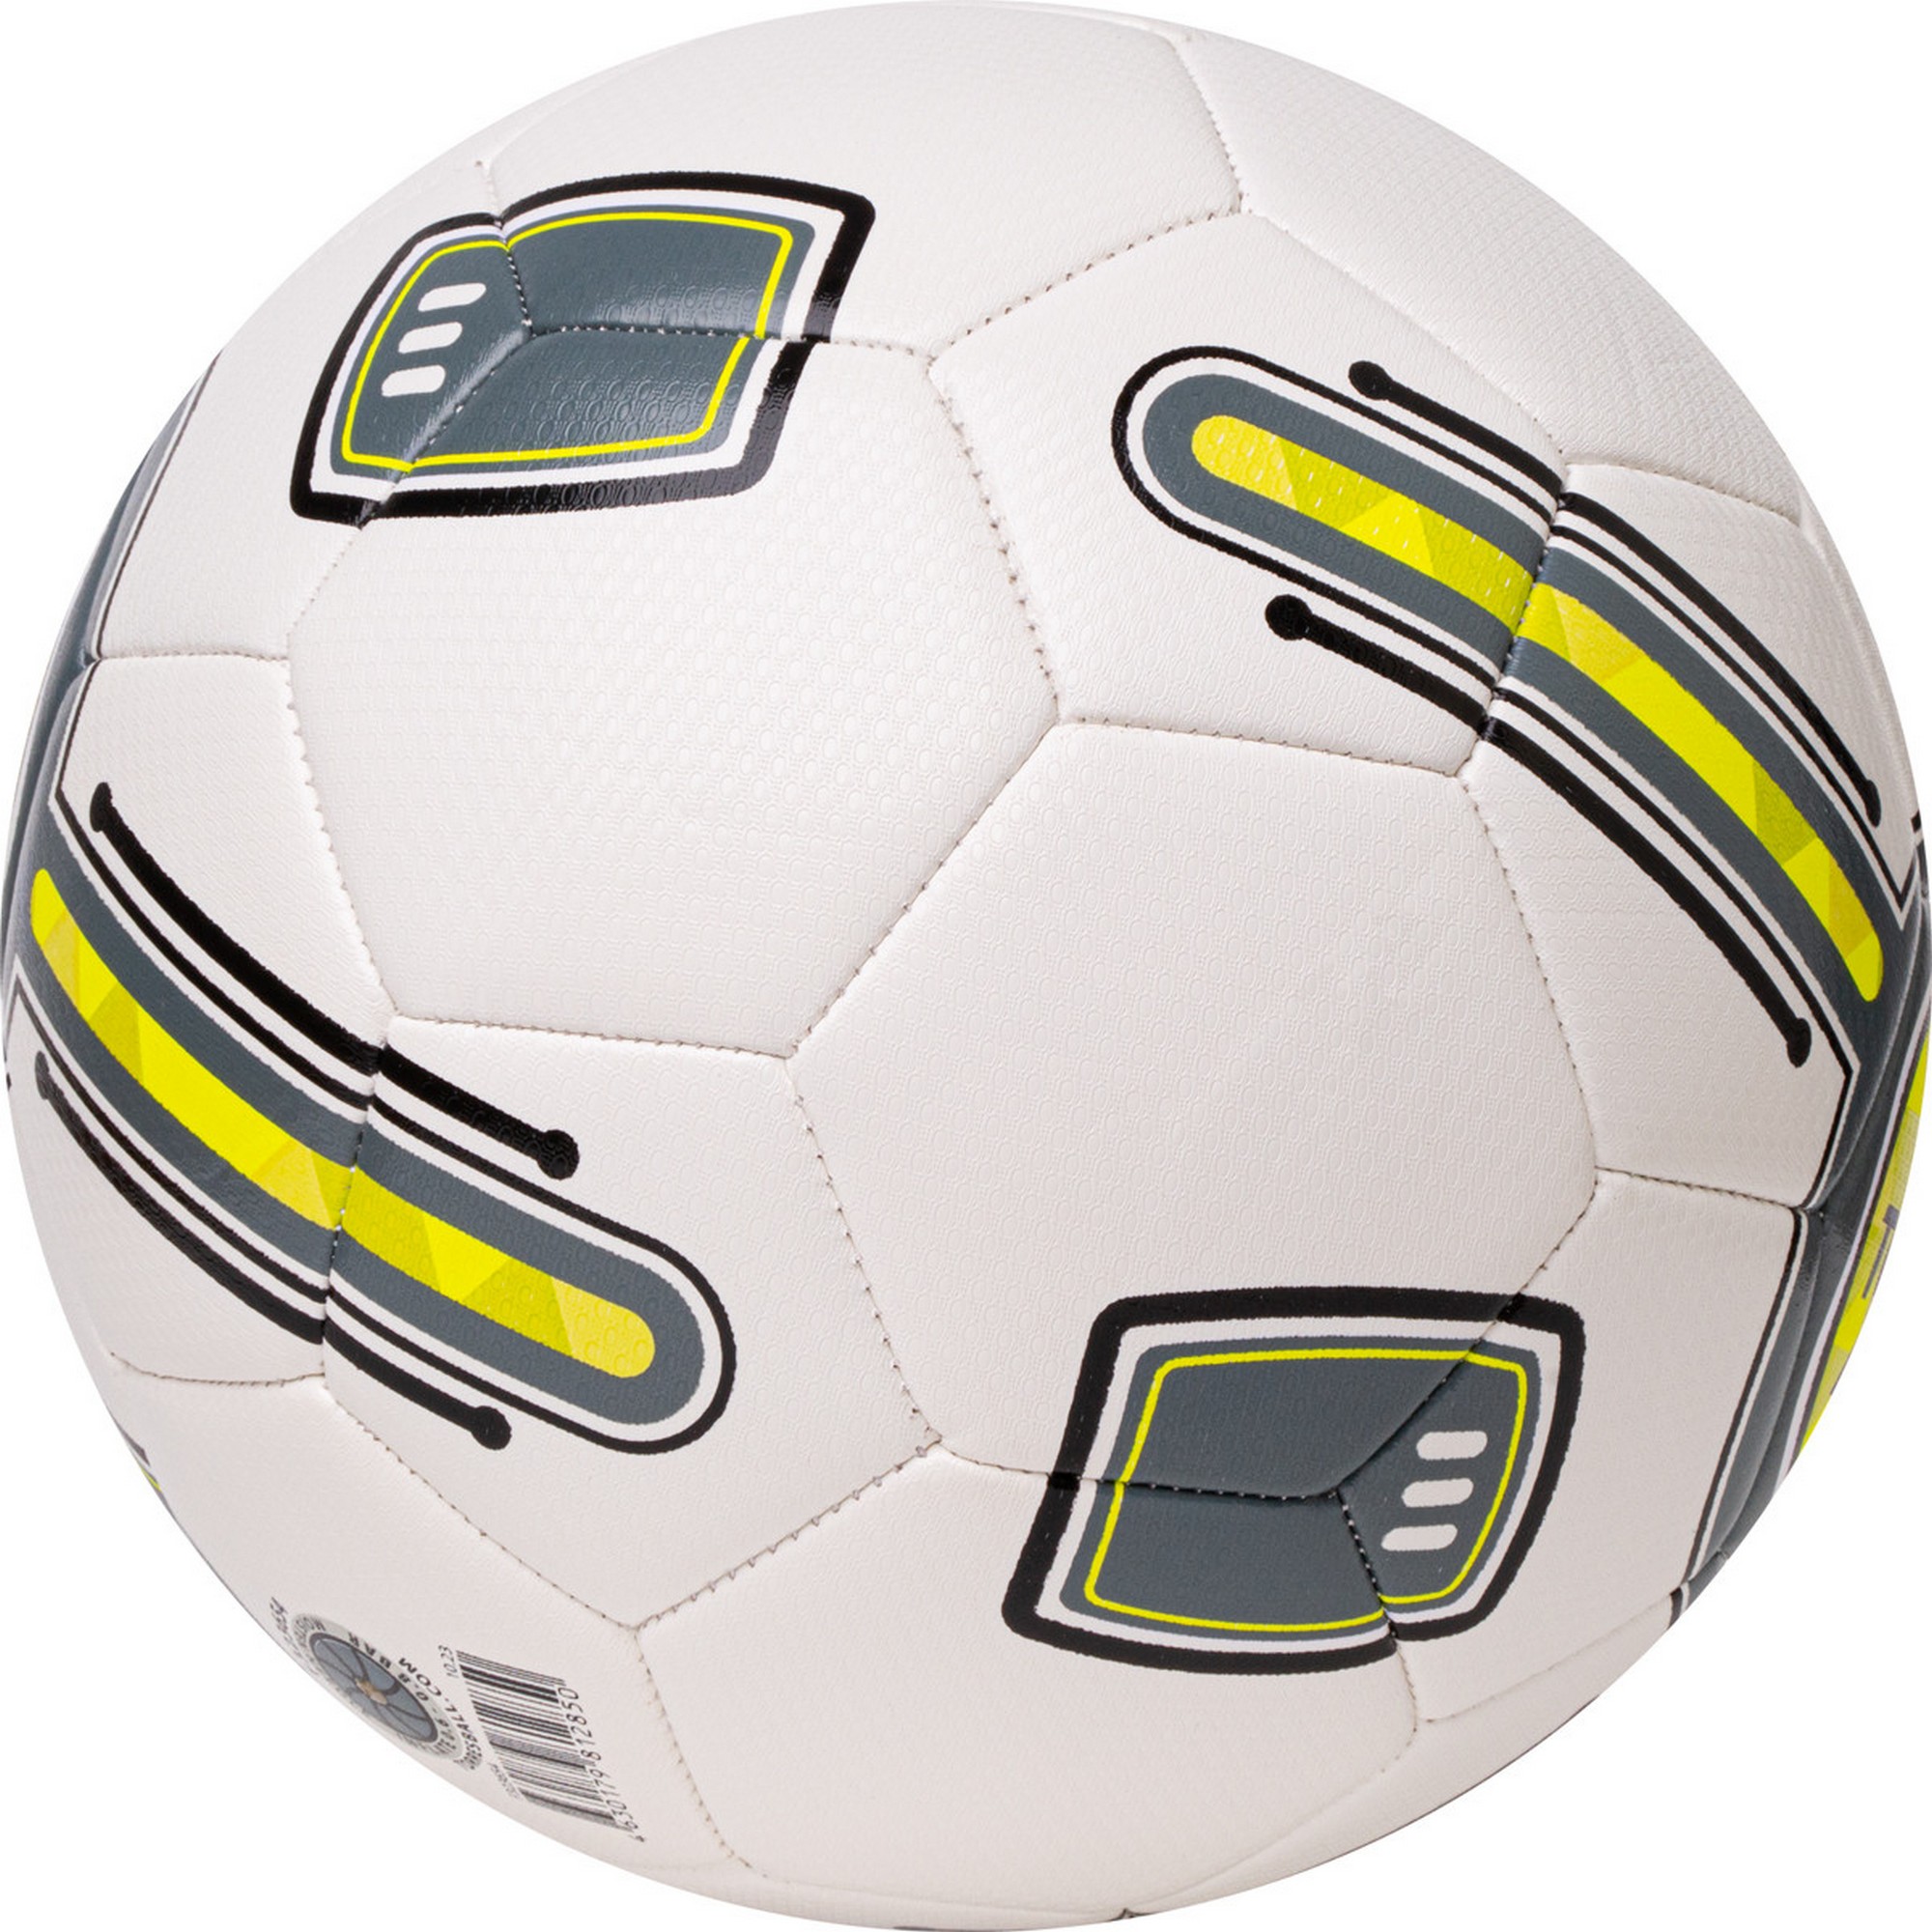 Мяч футбольный Torres BM 300 F323653 р.3 2000_2000